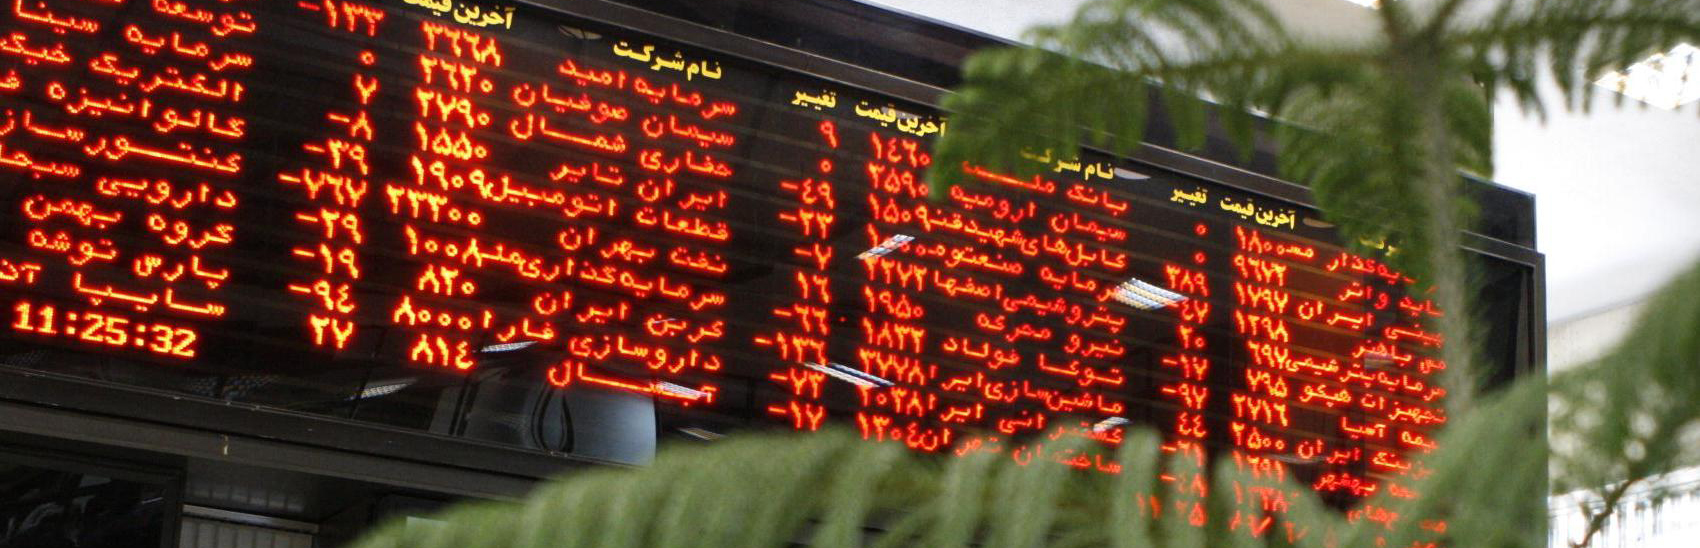 ارزش معامله ها در بورس تهران ٦٣ درصد افزایش یافت